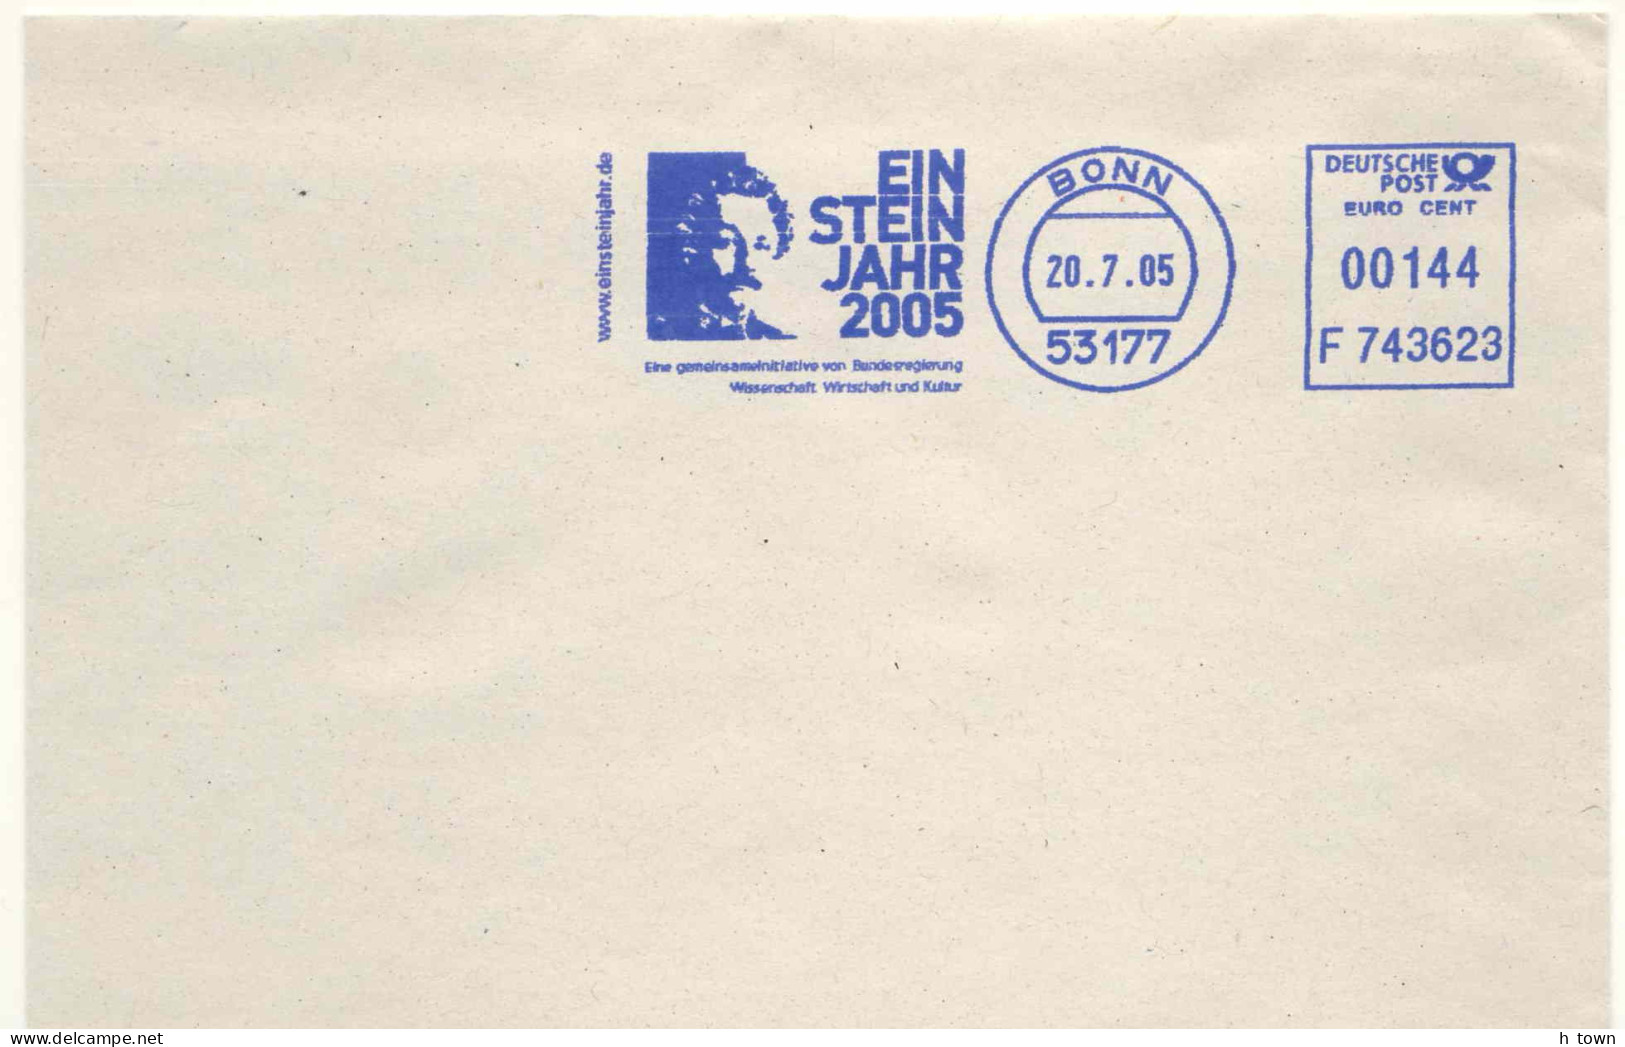 950  Albert Einstein: Ema D'Allemagne, 2005 - Einstein Year Meter Stamp From Germany. Prix Nobel Chimie Physique - Albert Einstein